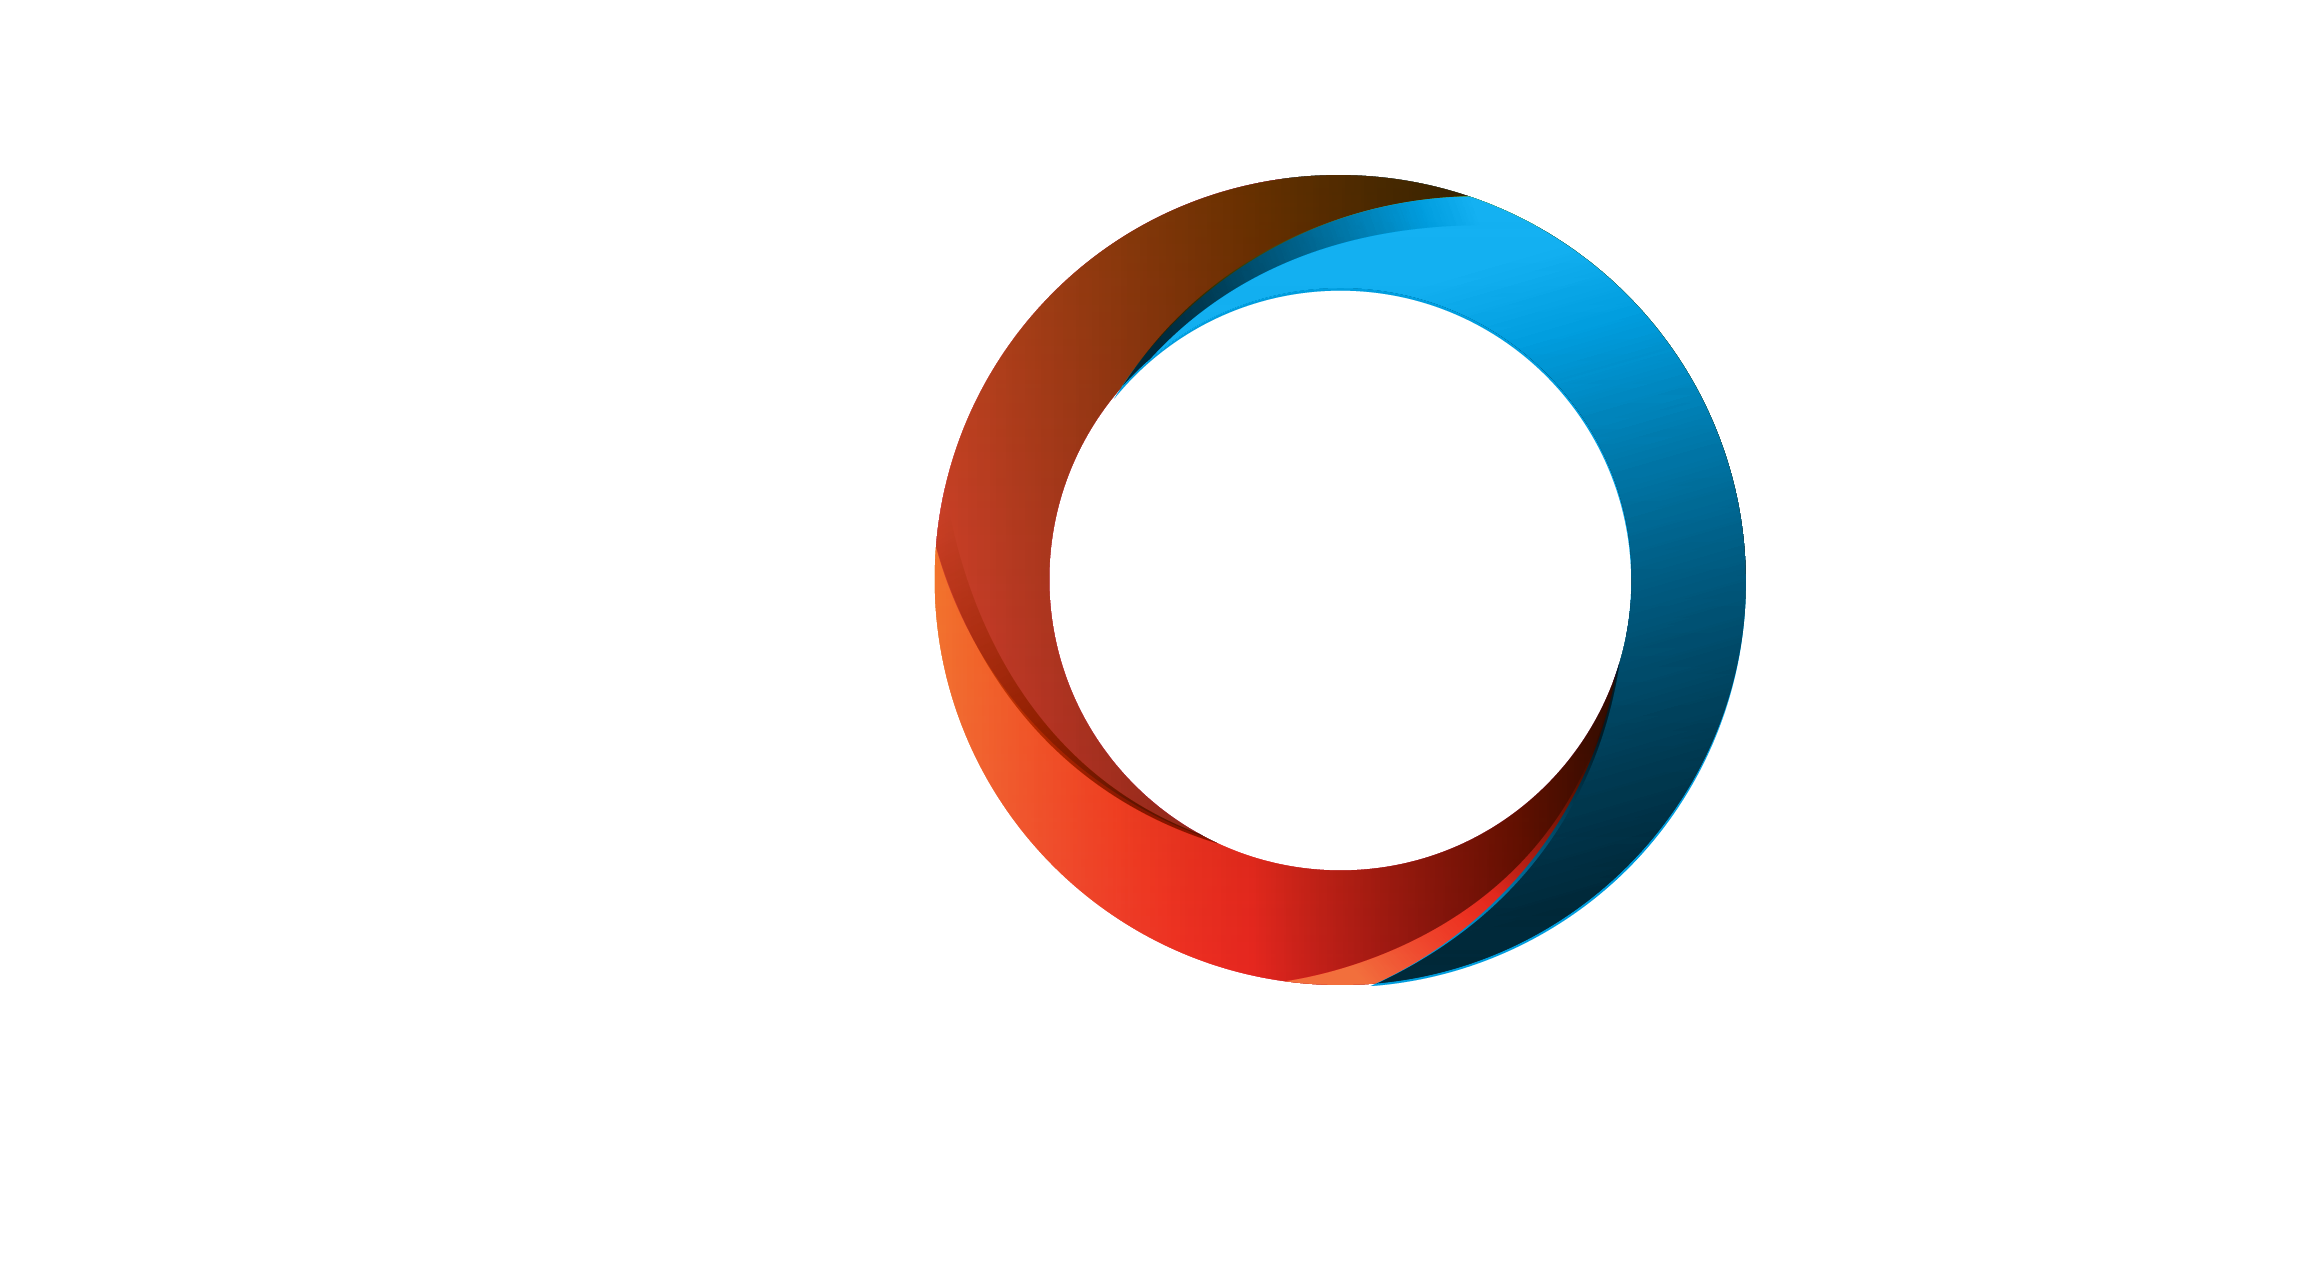 ZoomFibre